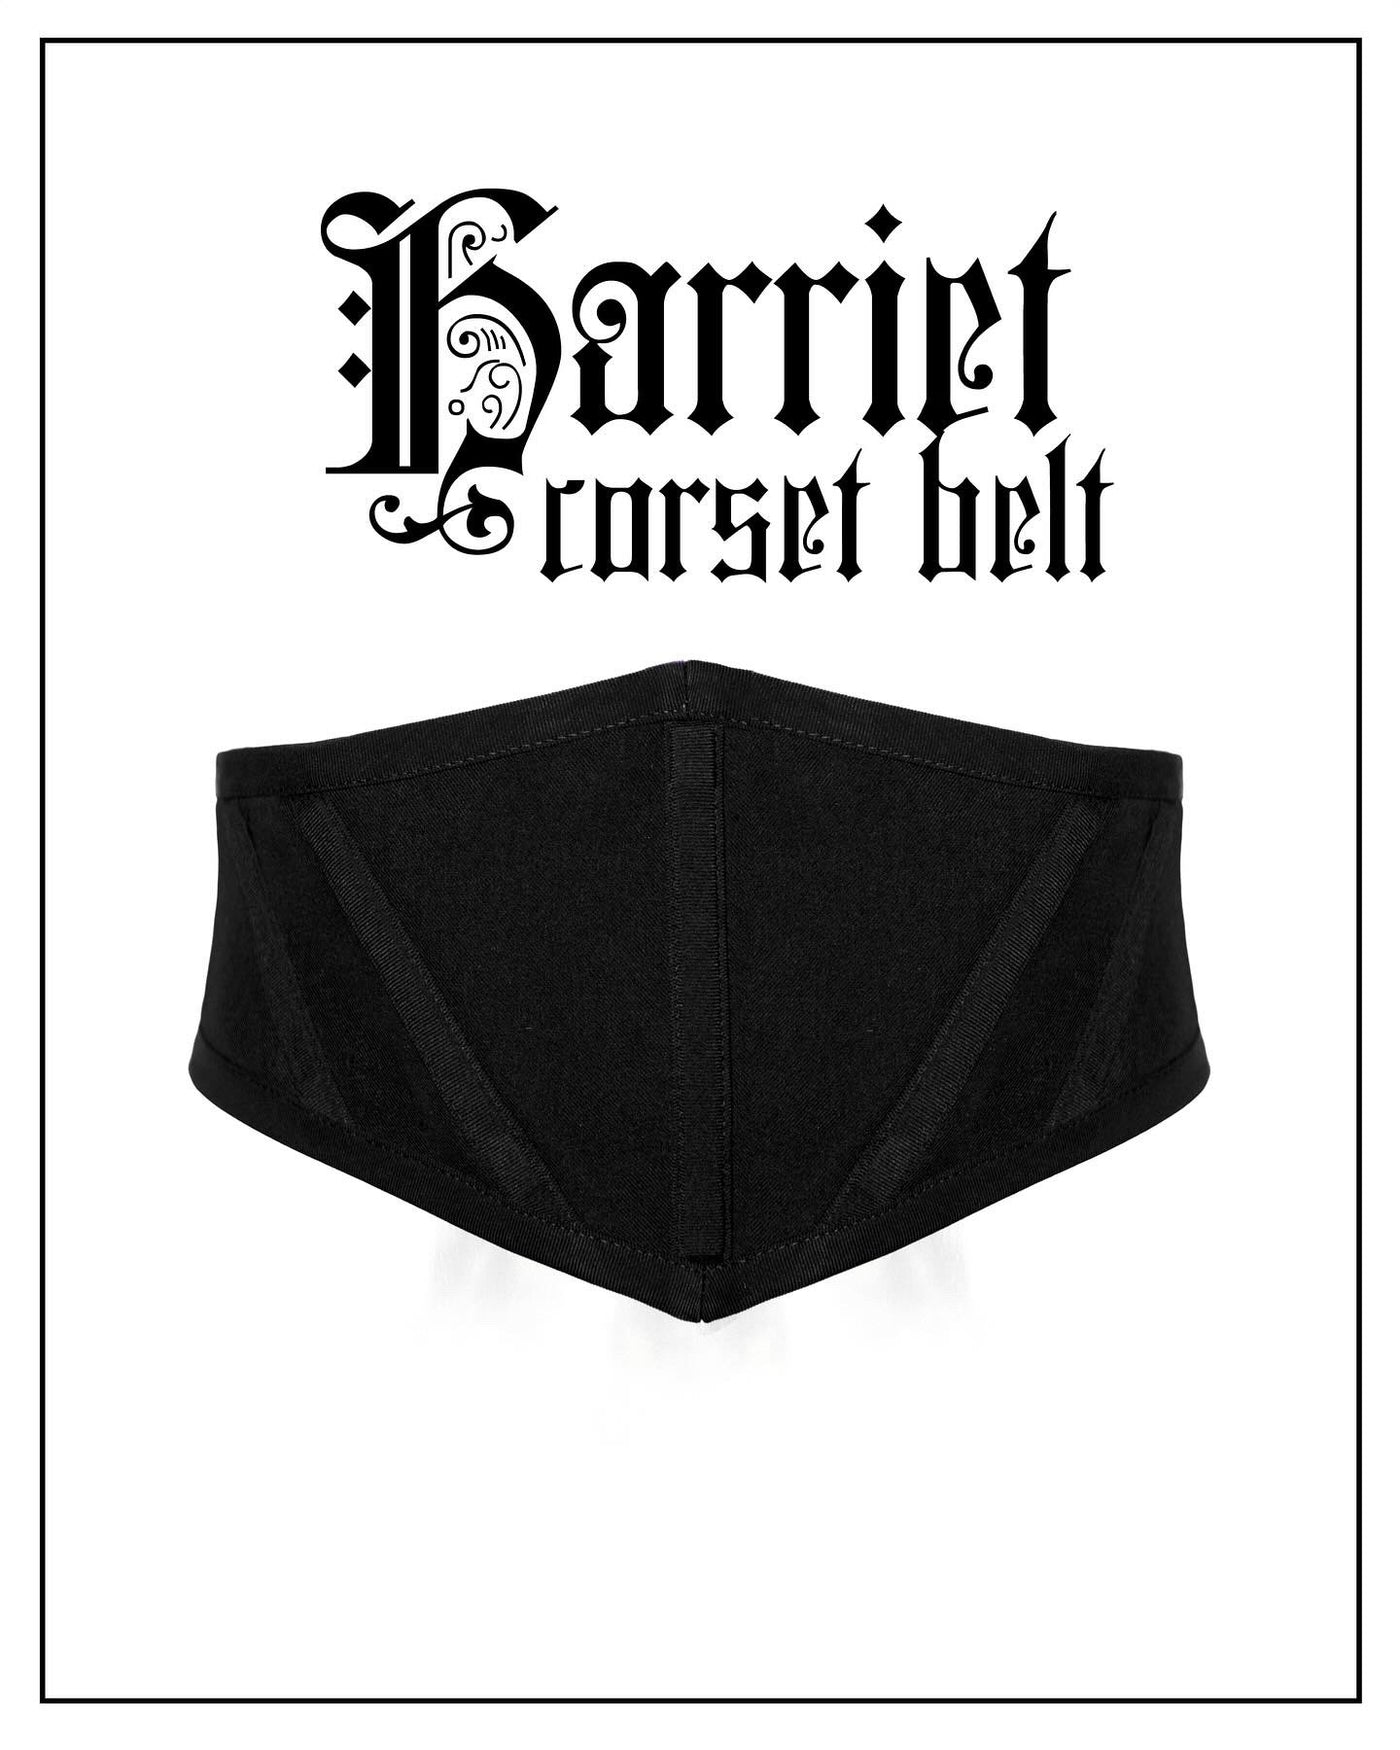 The Harriet Corset Belt